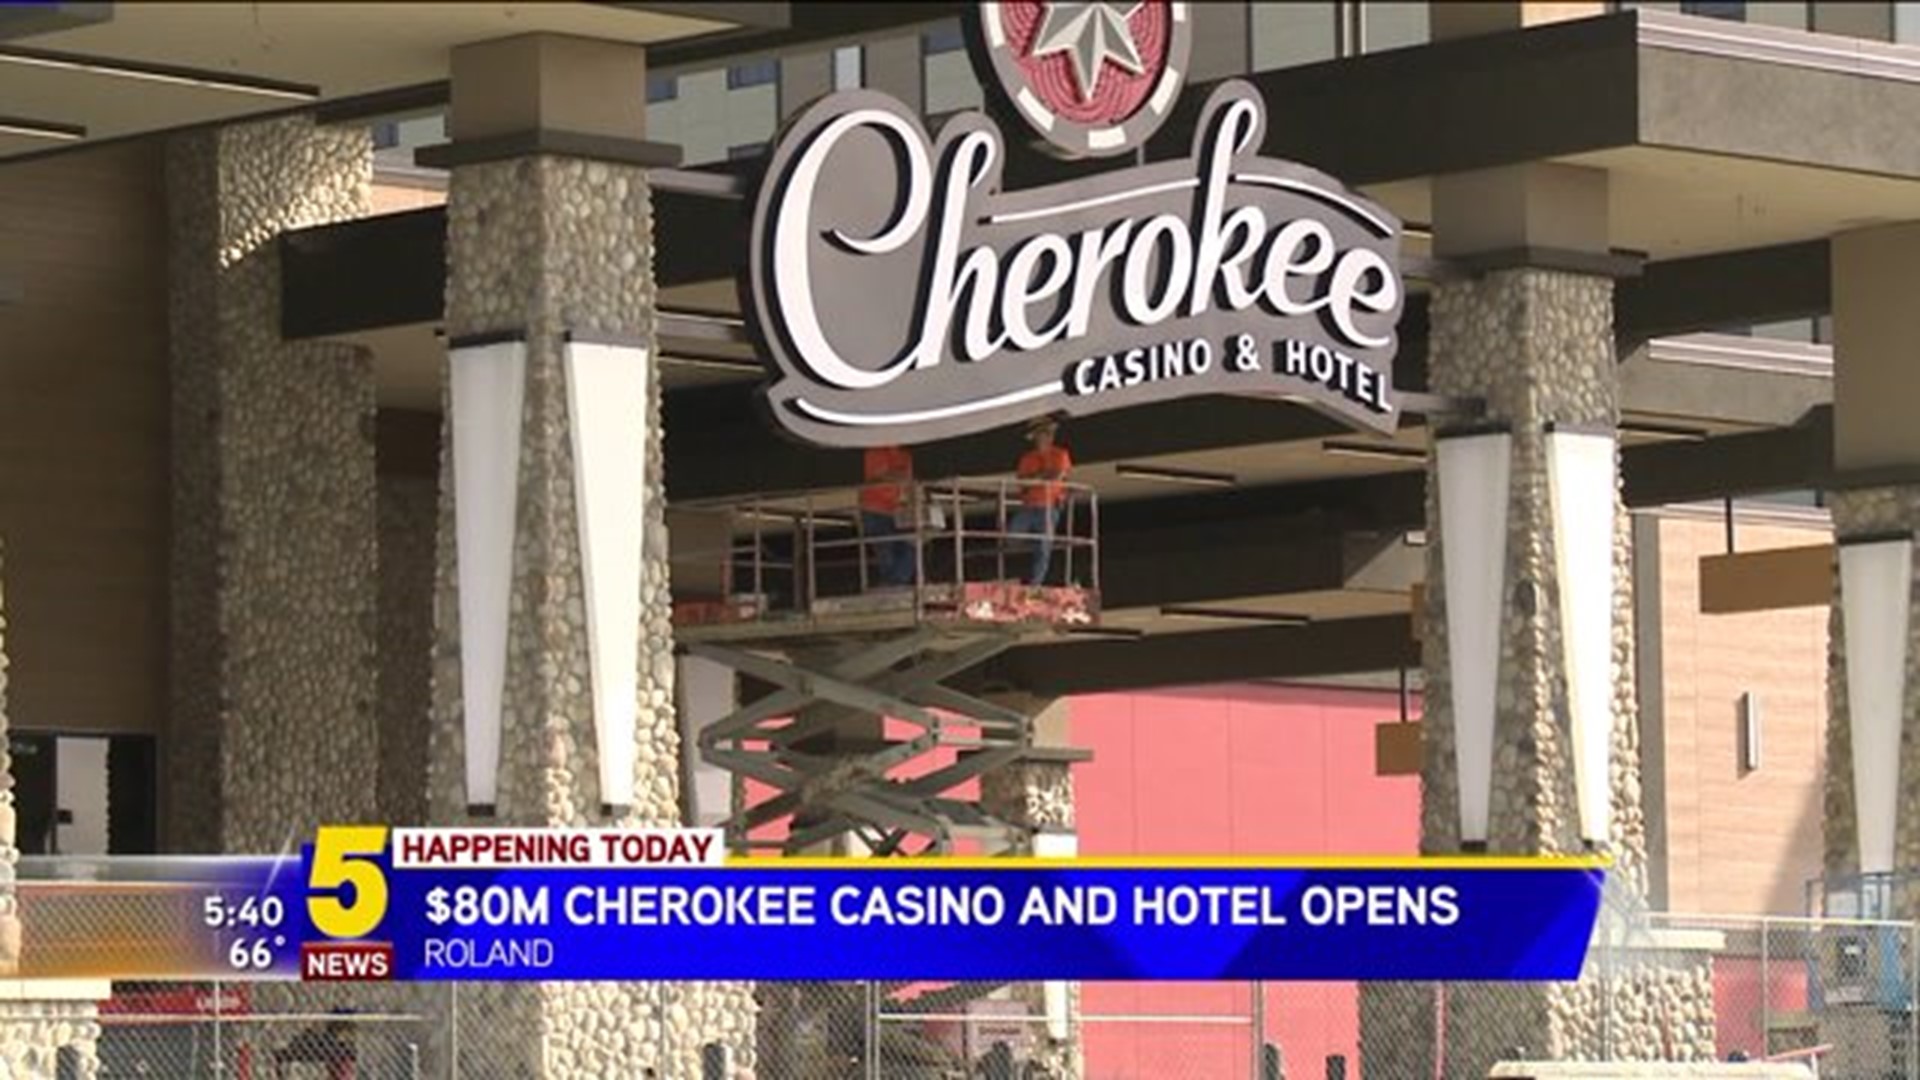 grand opening of the cherokee casino rola